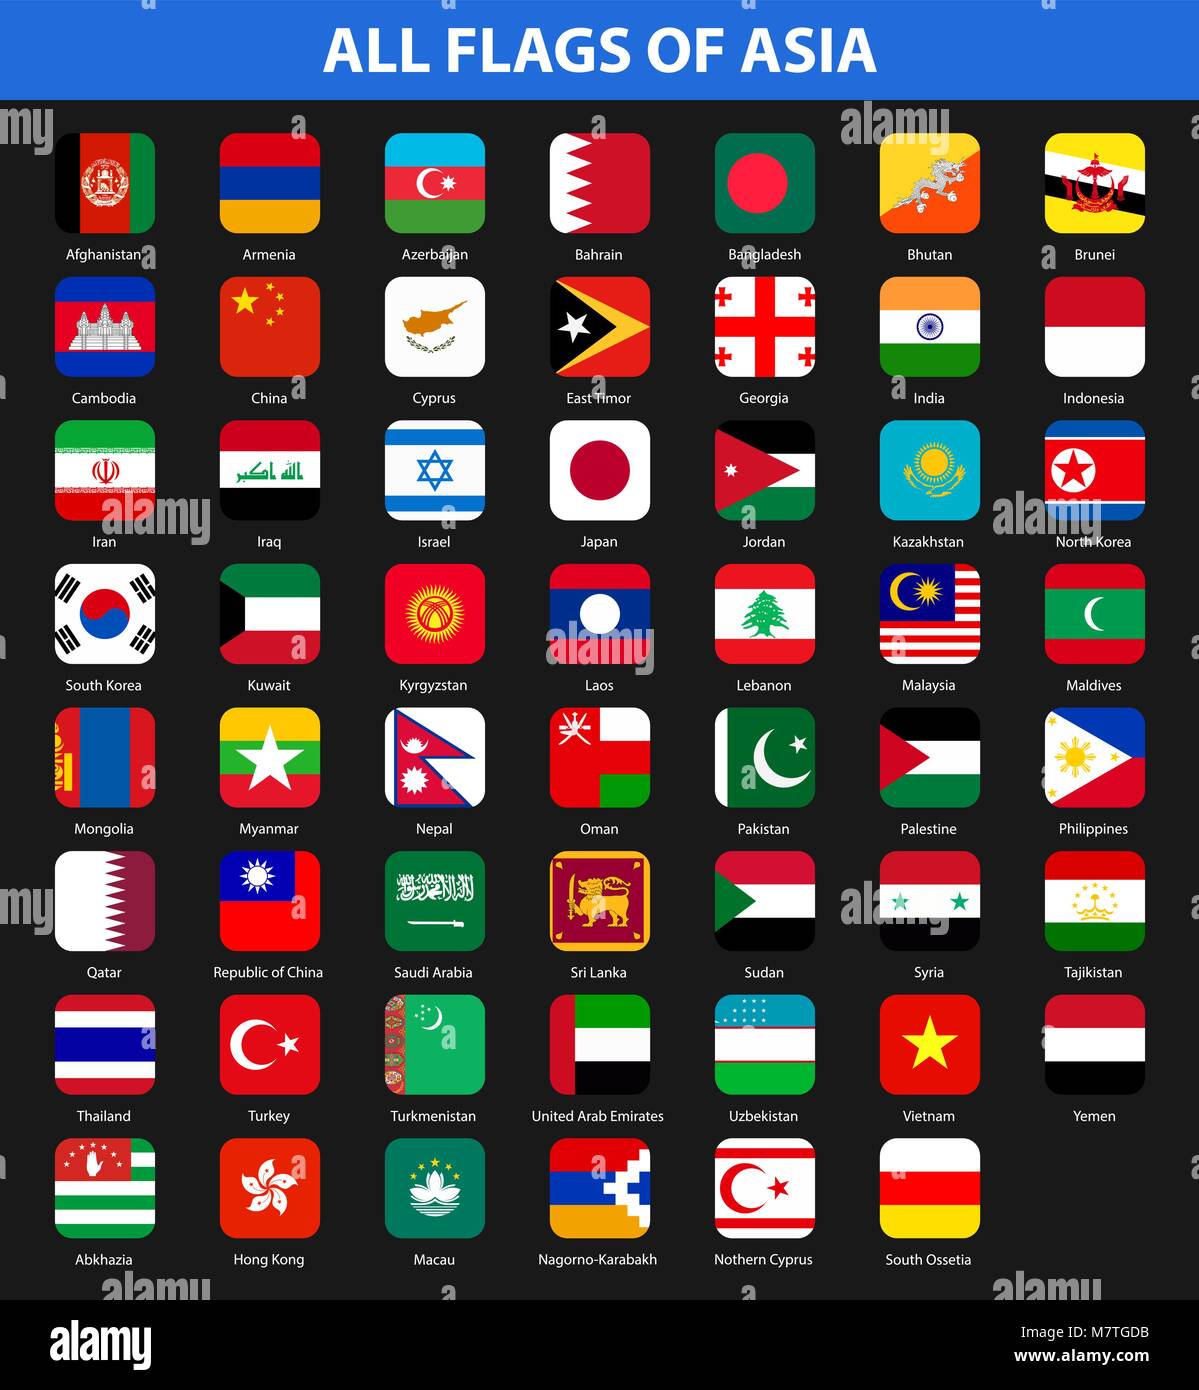 Alle Flaggen der Länder der Region. Flat Style Stock Vektor